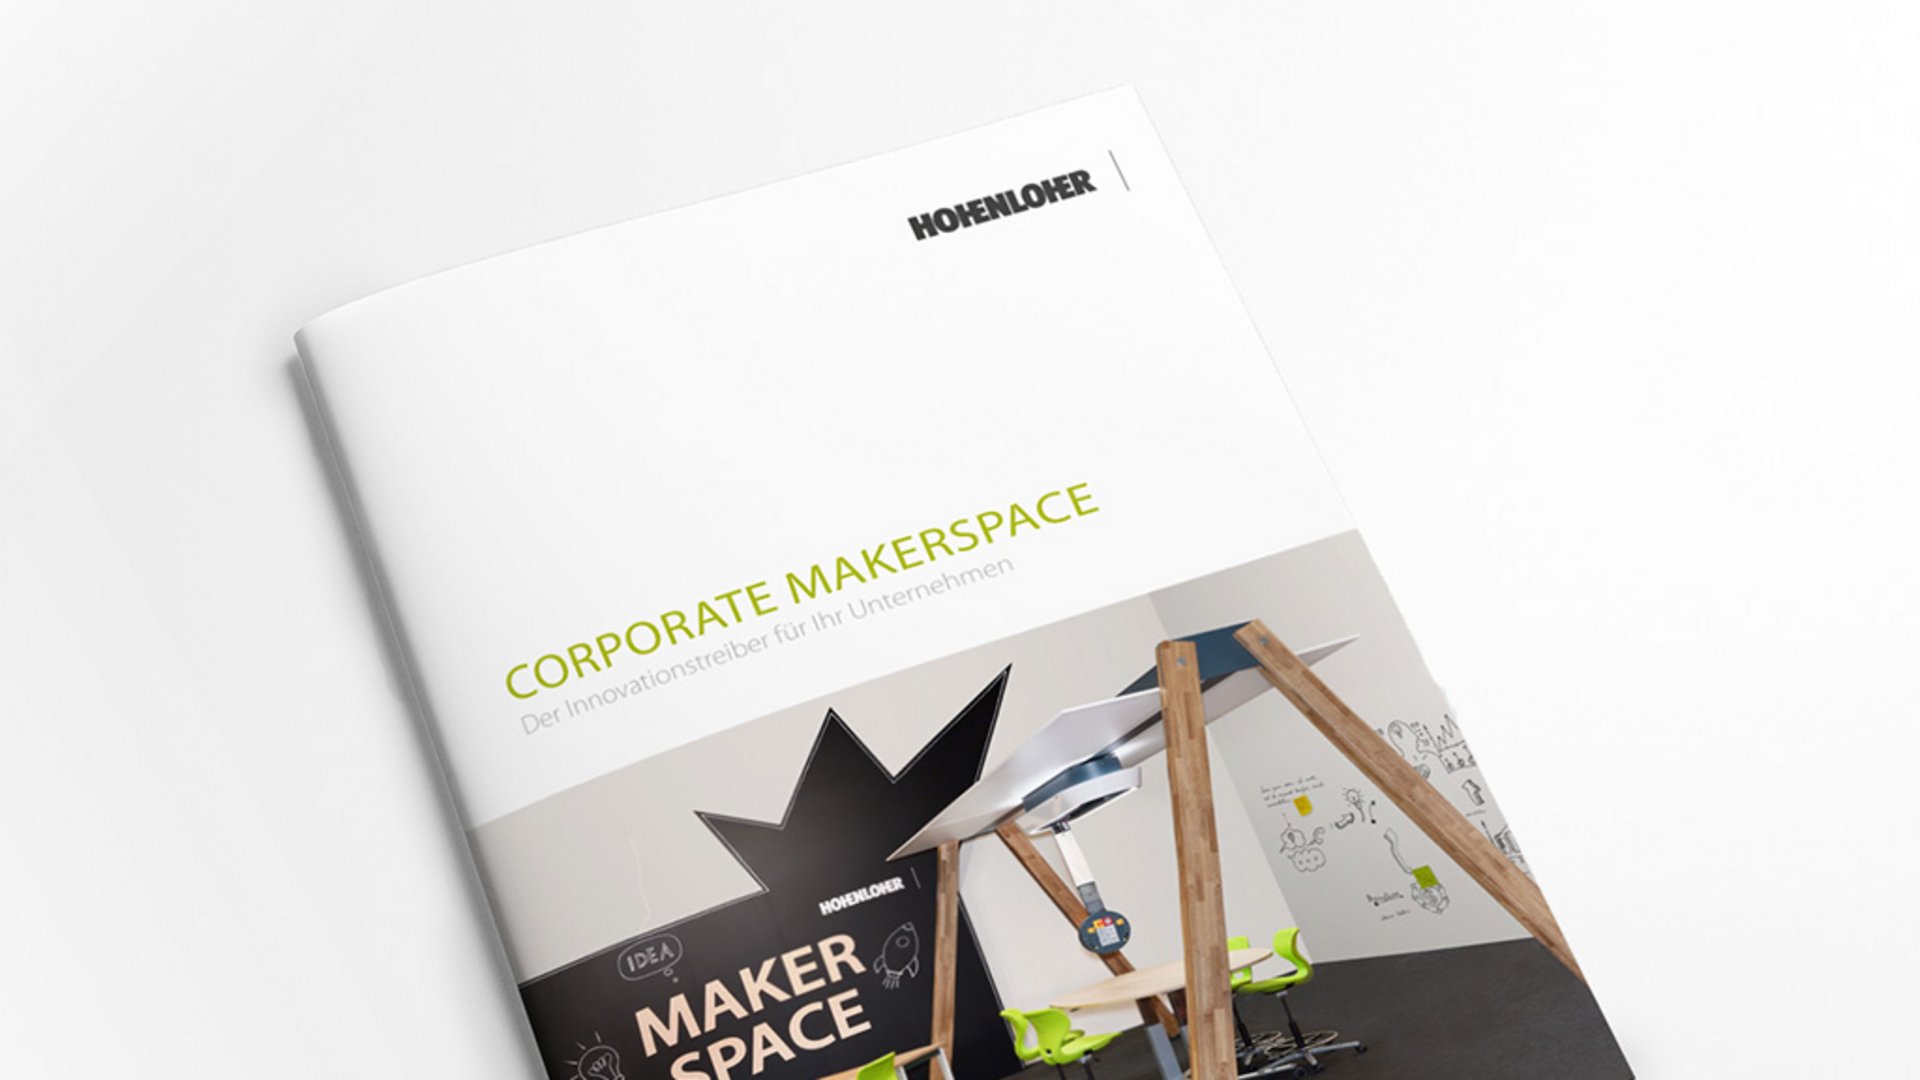 Bild: Mehr Informationen zum Corporate Makerspace